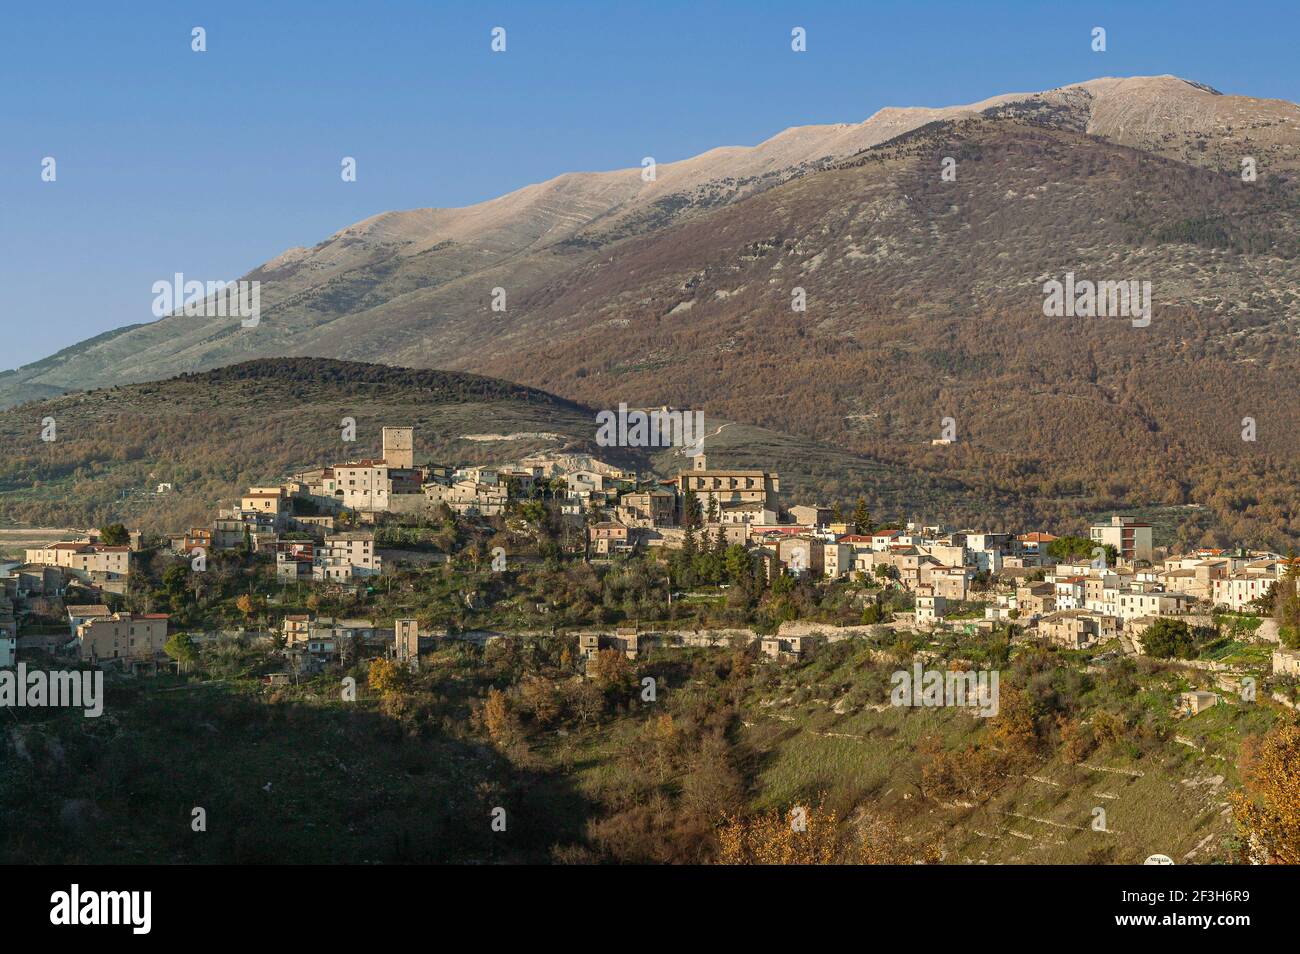 Paysage urbain d'une ville de montagne dans les Abruzzes Lazio et le parc national Molise. Campoli Appennino, province de Frosinone, Latium, Italie, Europe Banque D'Images